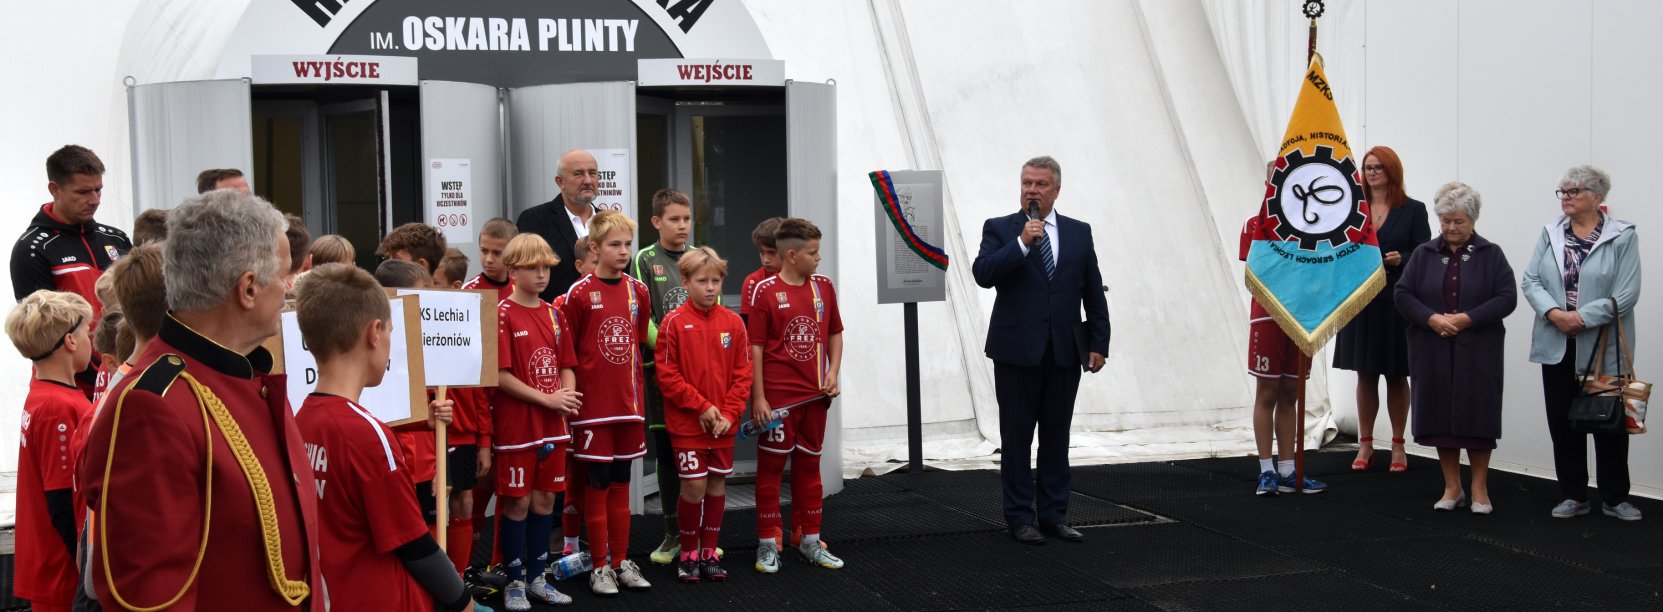 Grupa piłkarzy w czerwonych strojach przed halą piłkarską, obok mężczyzna w garniturze z mikrofonem